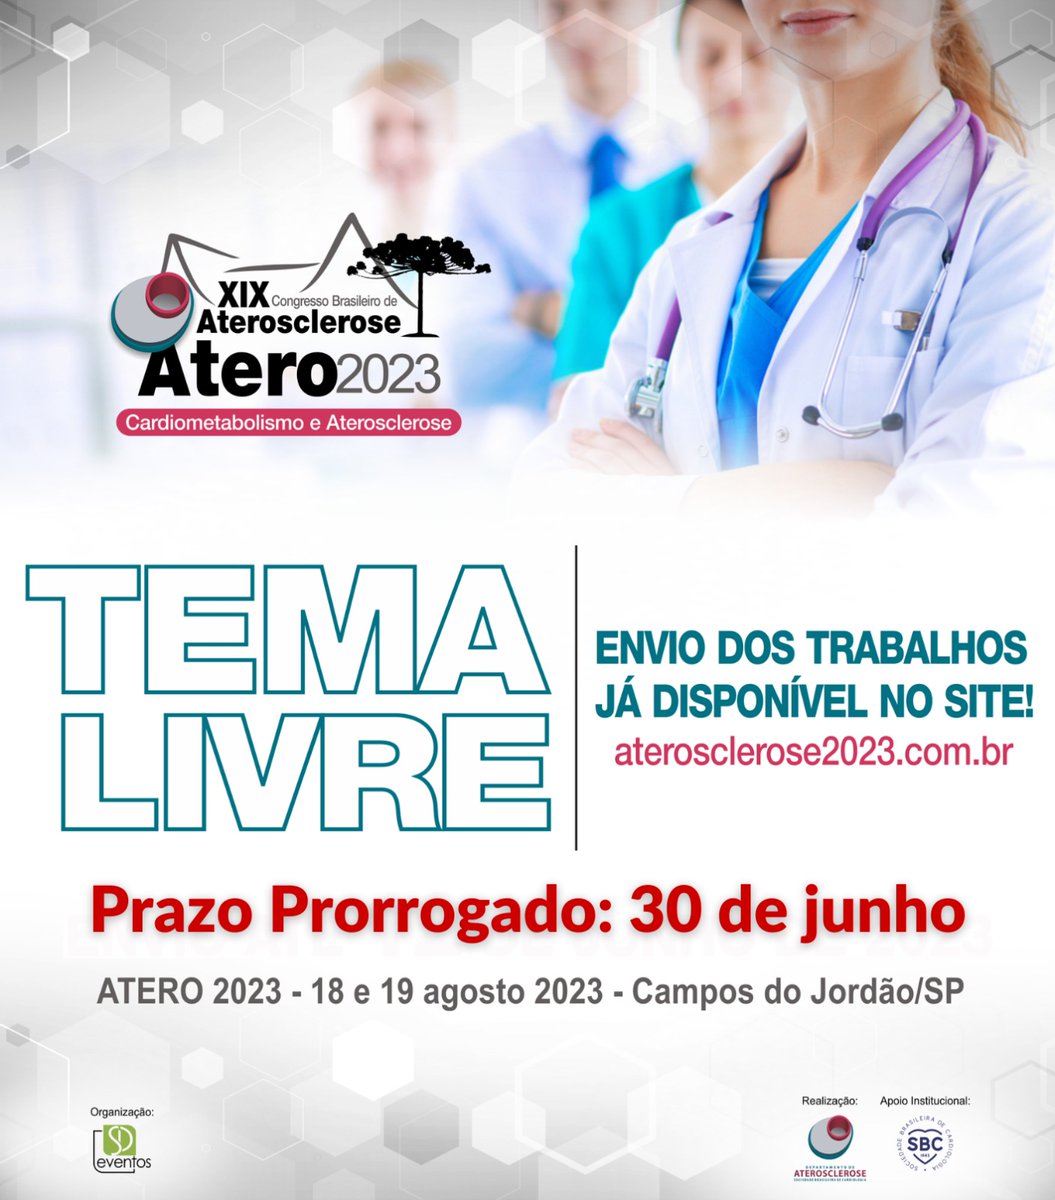 Envie seu trabalho: aterosclerose2023.com.br